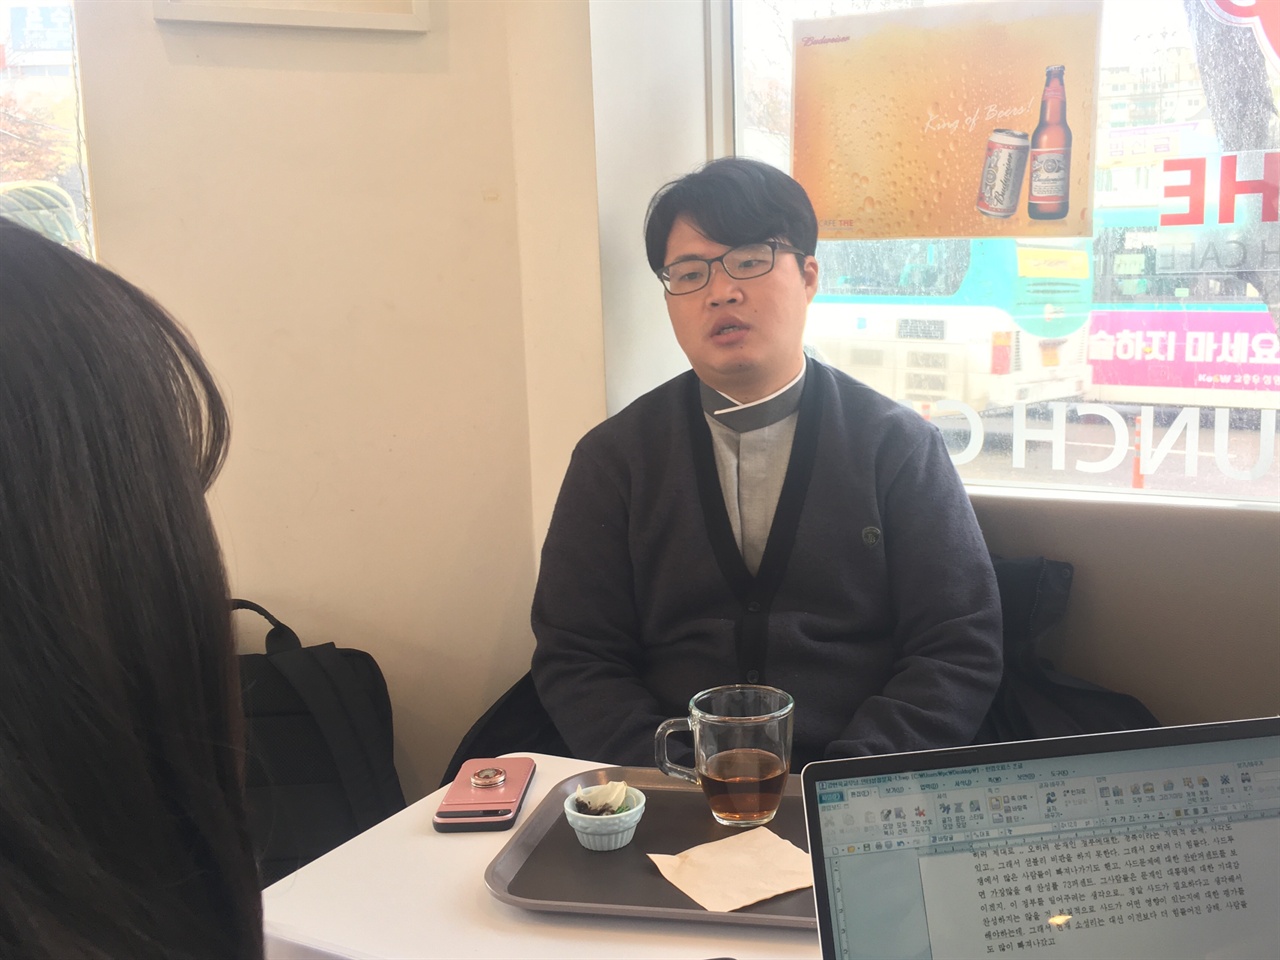 지난 11월 25일 낮, 온수역 앞의 카페에서 소성리 종합상황실 강현욱 대변인을 만났다.